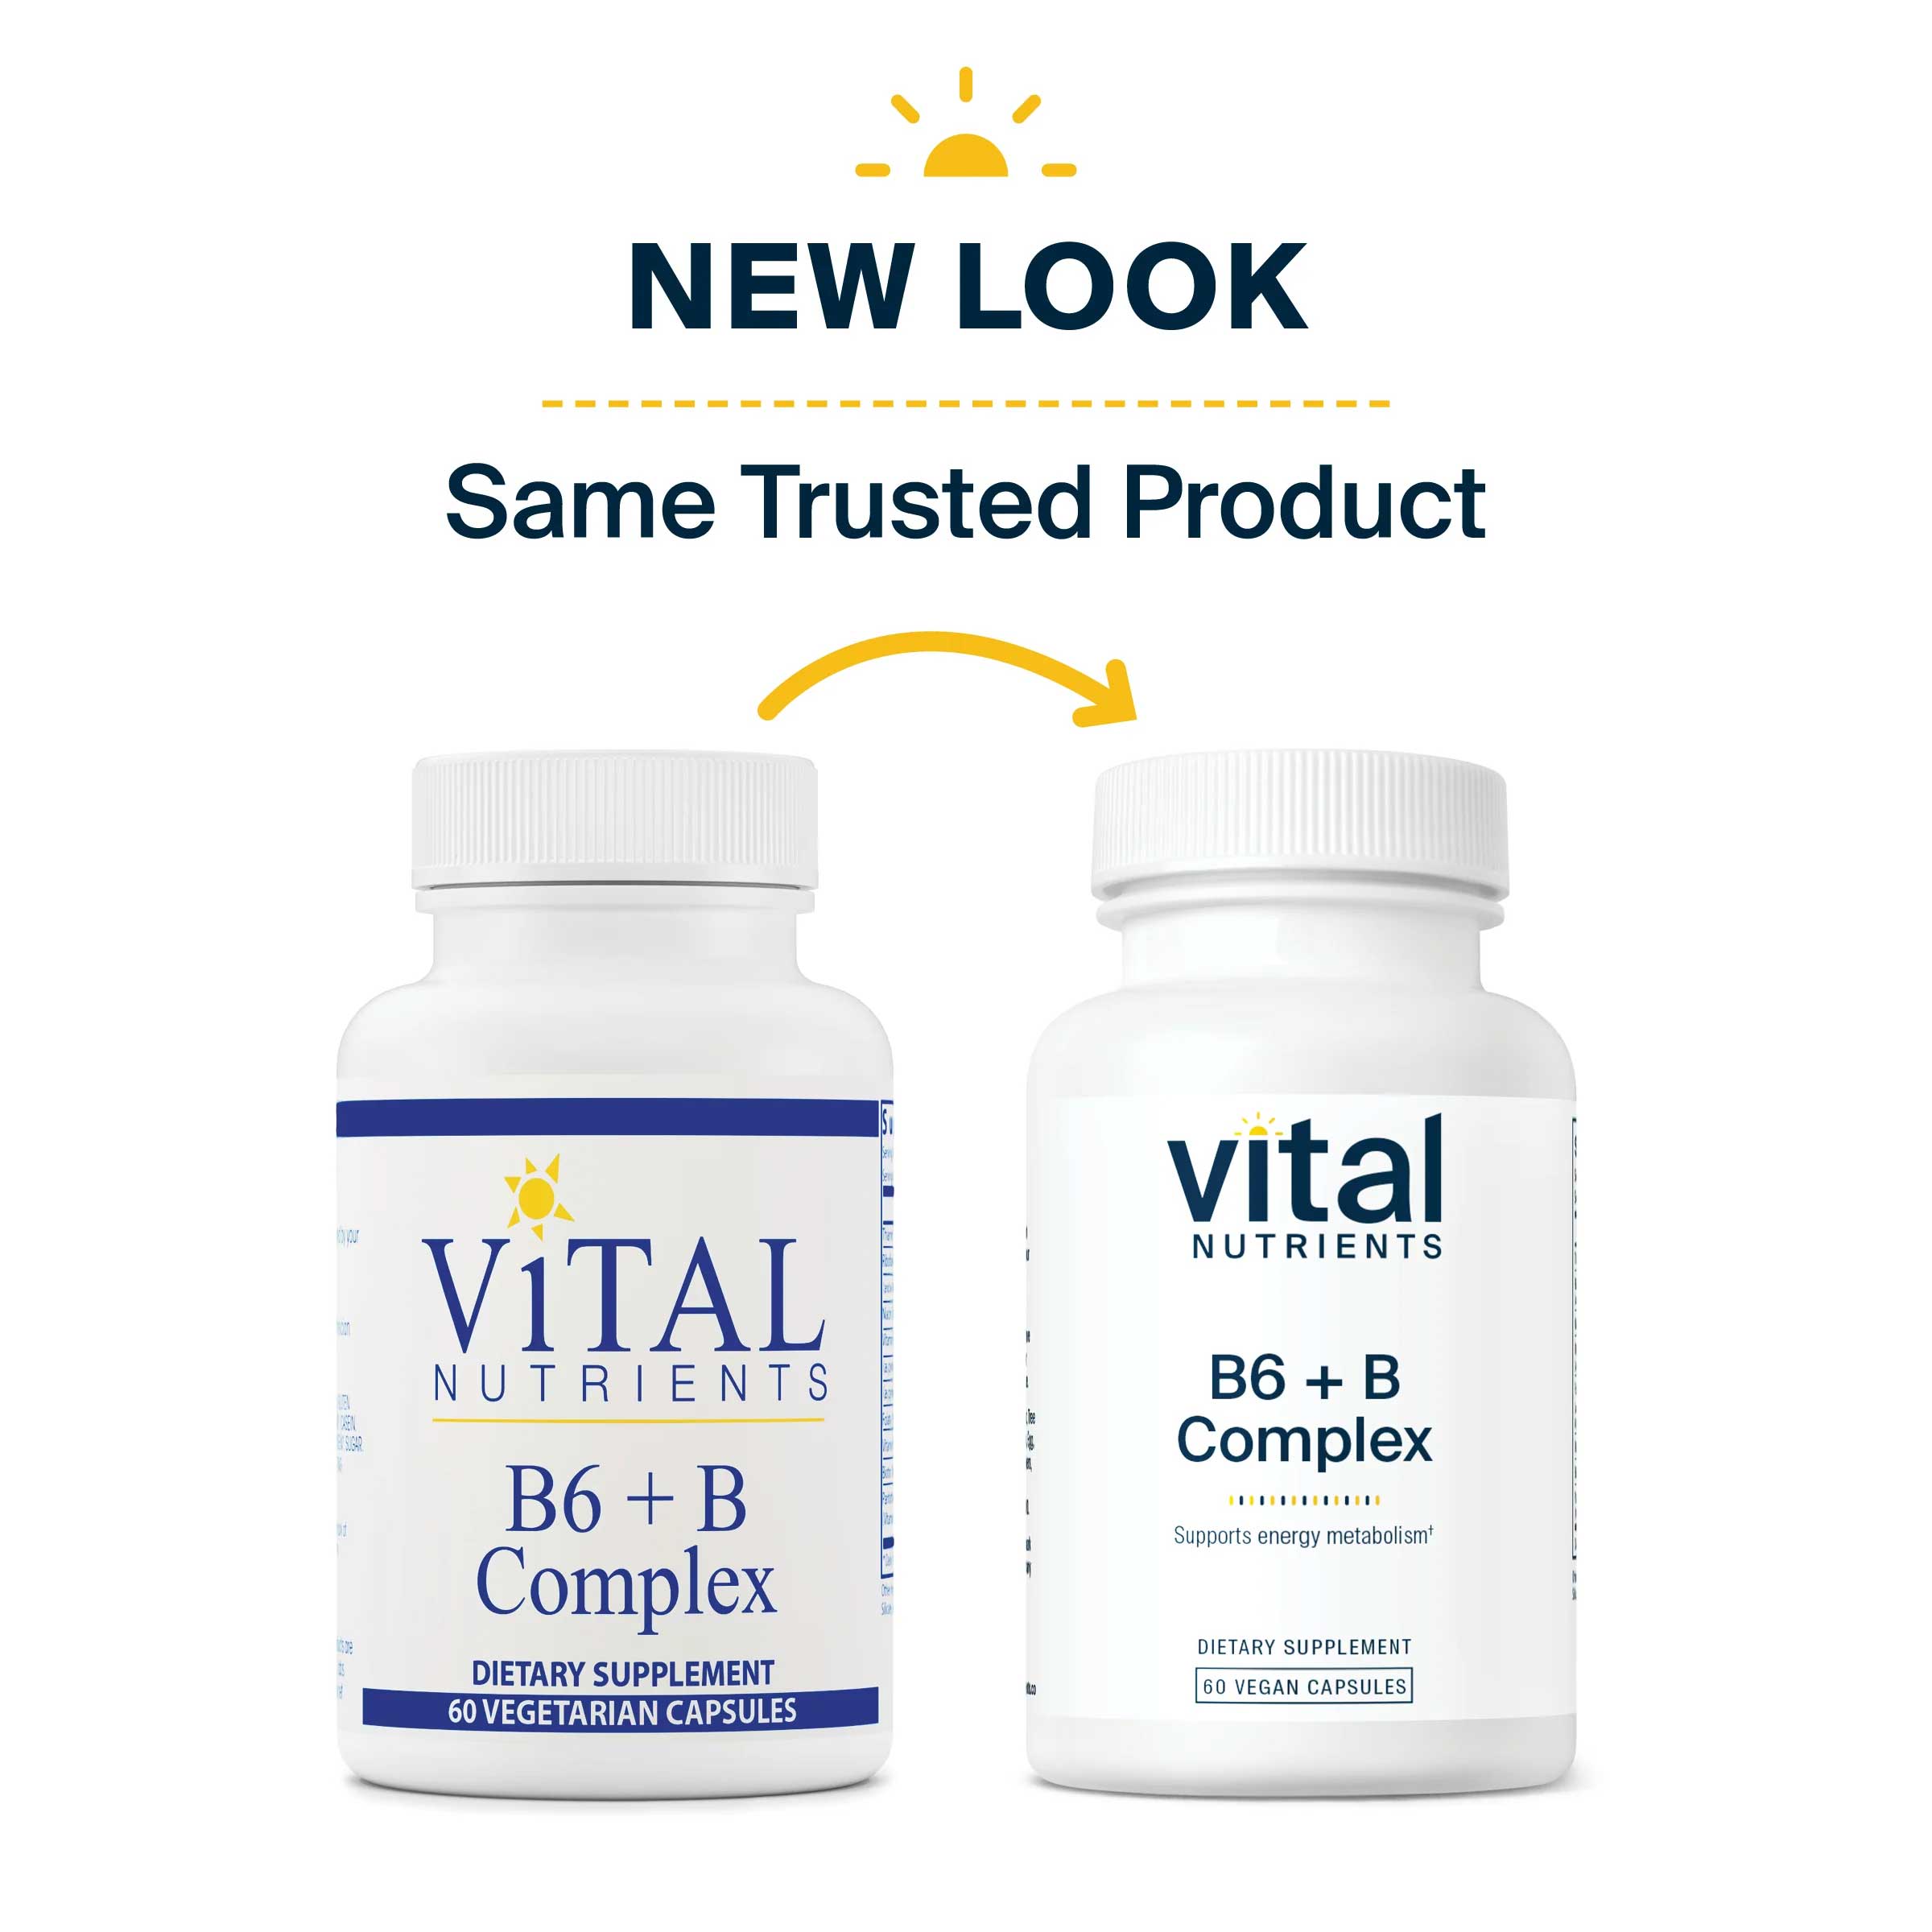 Vital Nutrients B6 + B Complex New Look